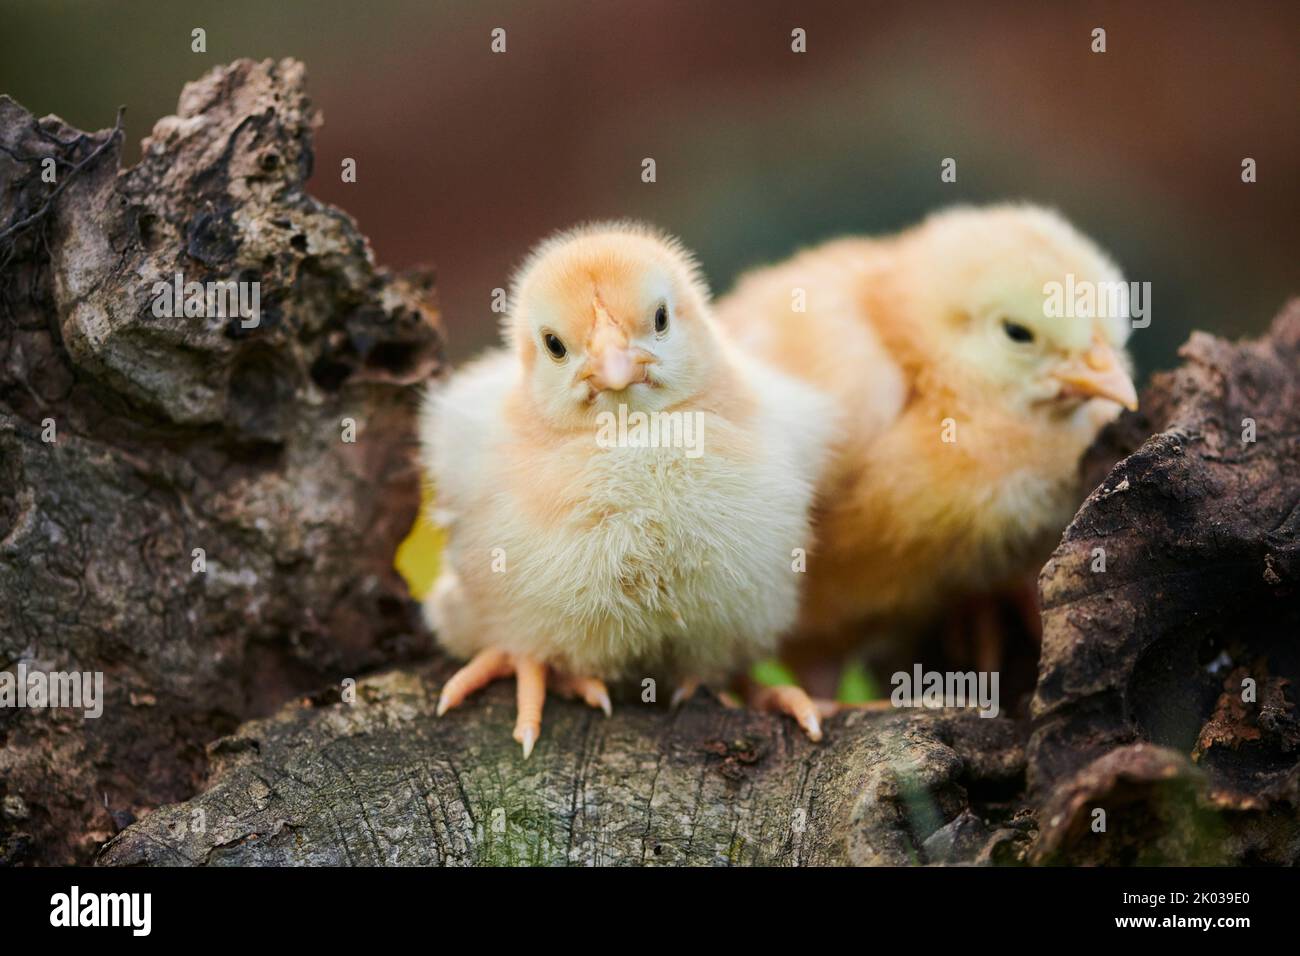 Volaille domestique (Gallus domesticus) dans un pré, poussins de poulet, Slovaquie, Europe Banque D'Images